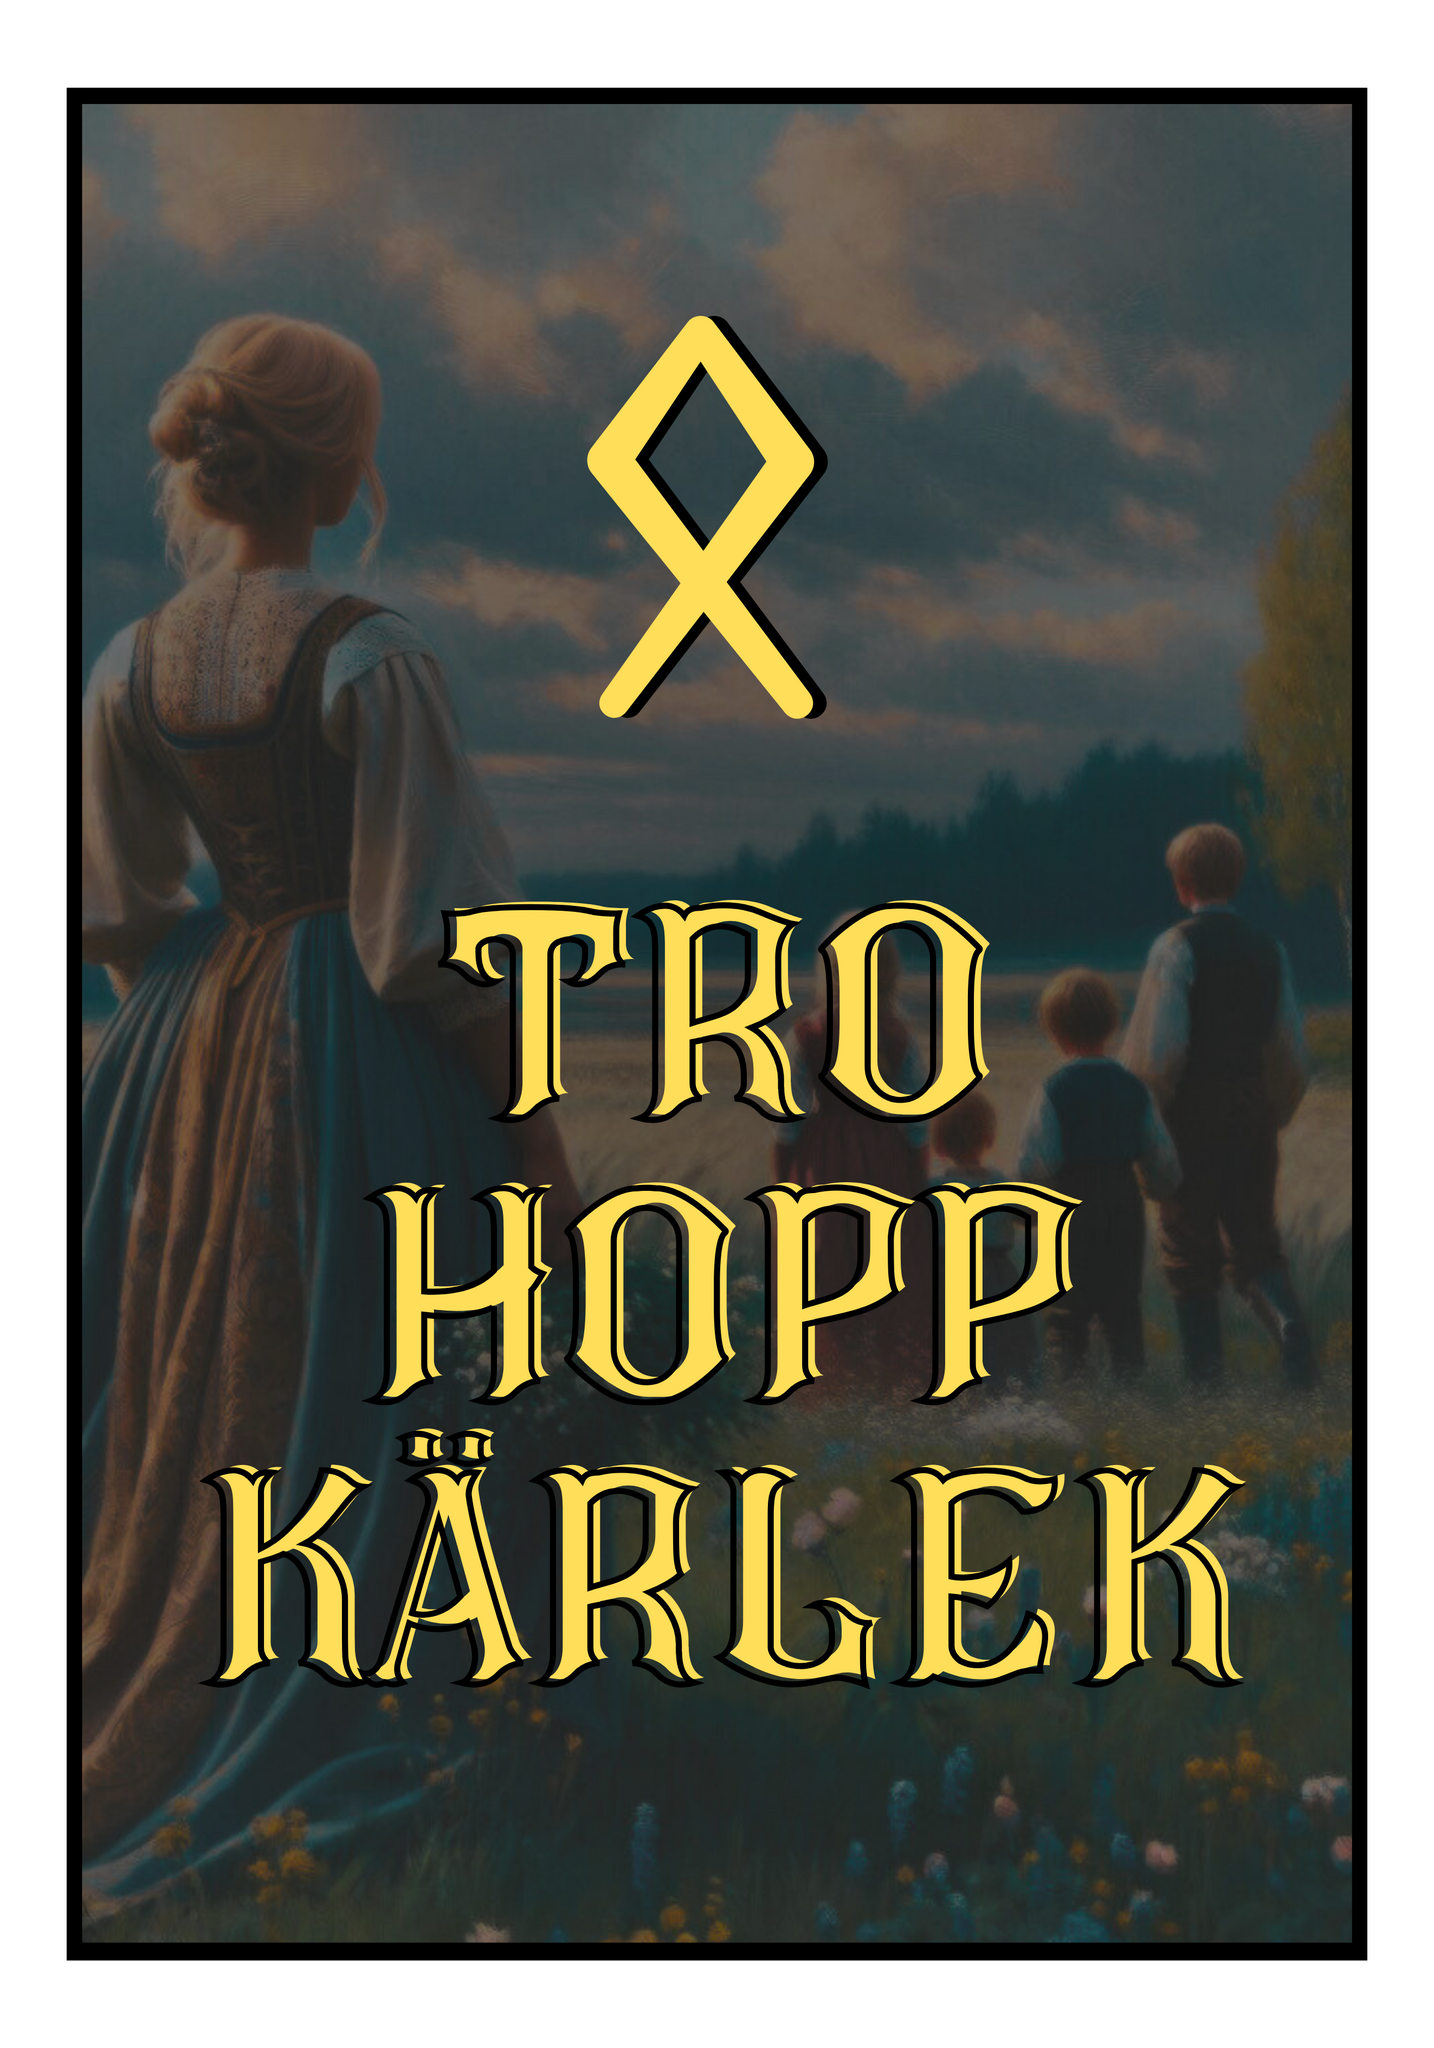 Tro, Hopp & Kärlek